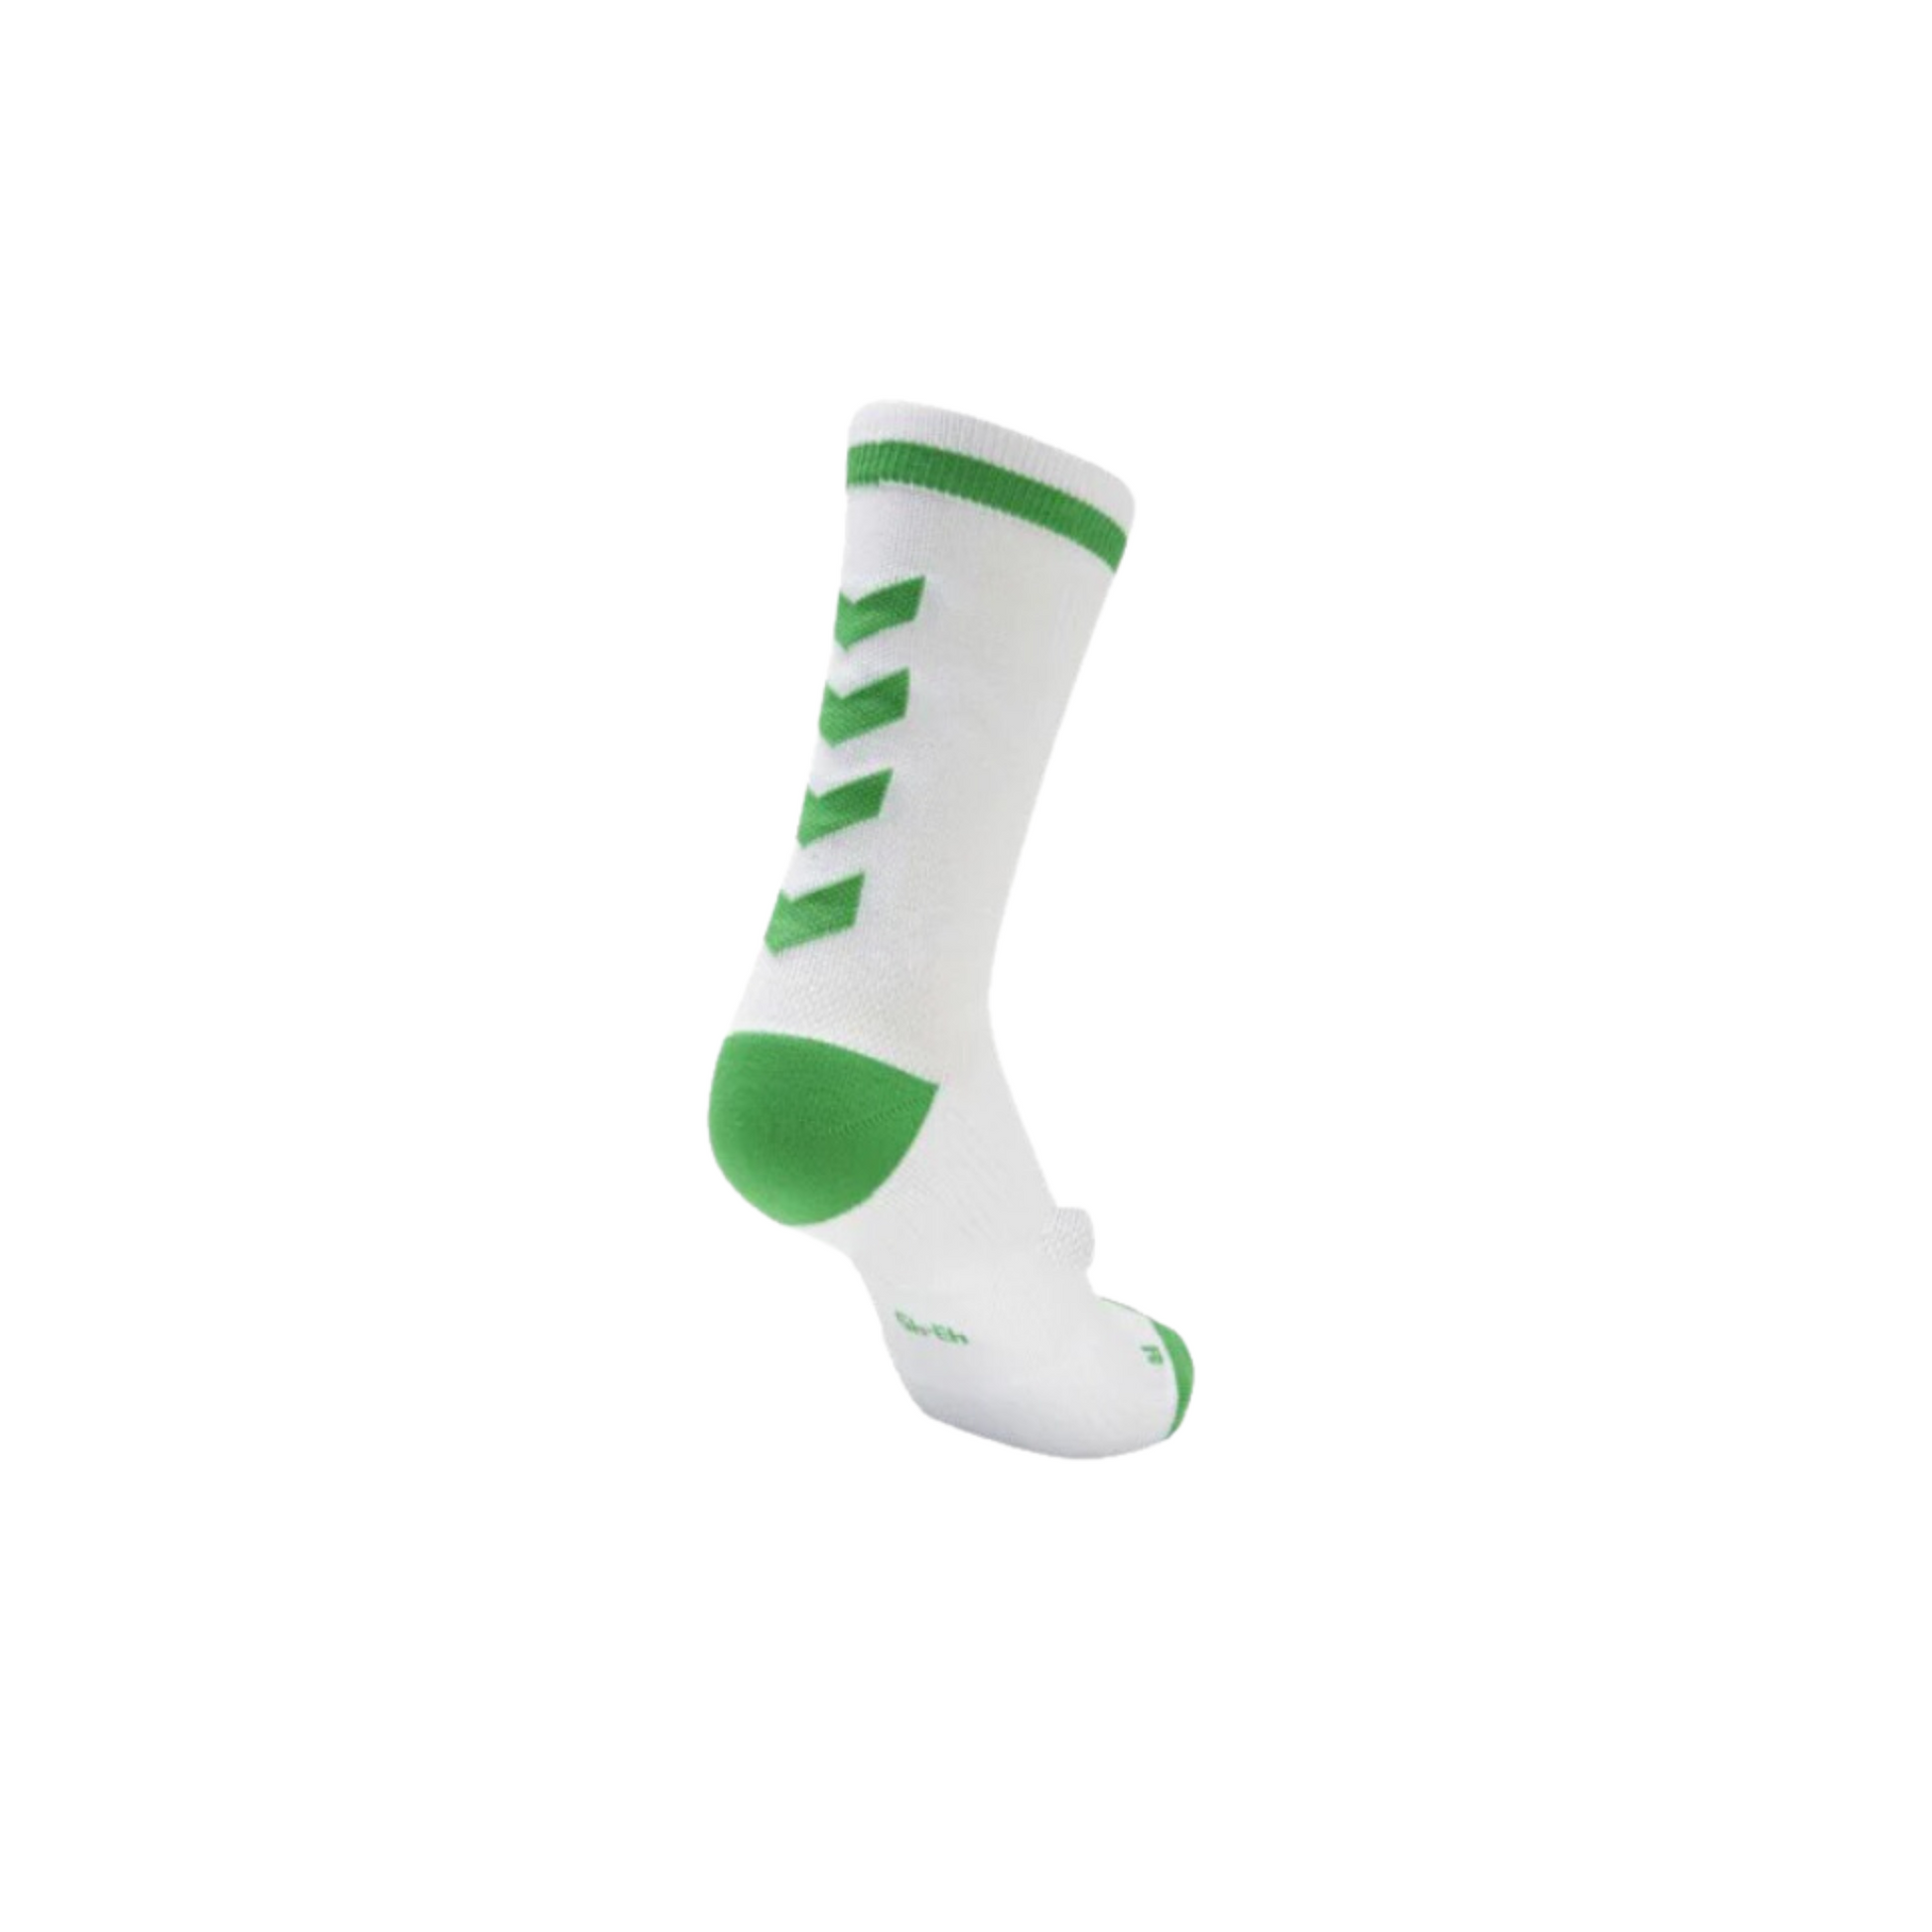 hummel calcetines blanco-verde – Deportes Dajoaa